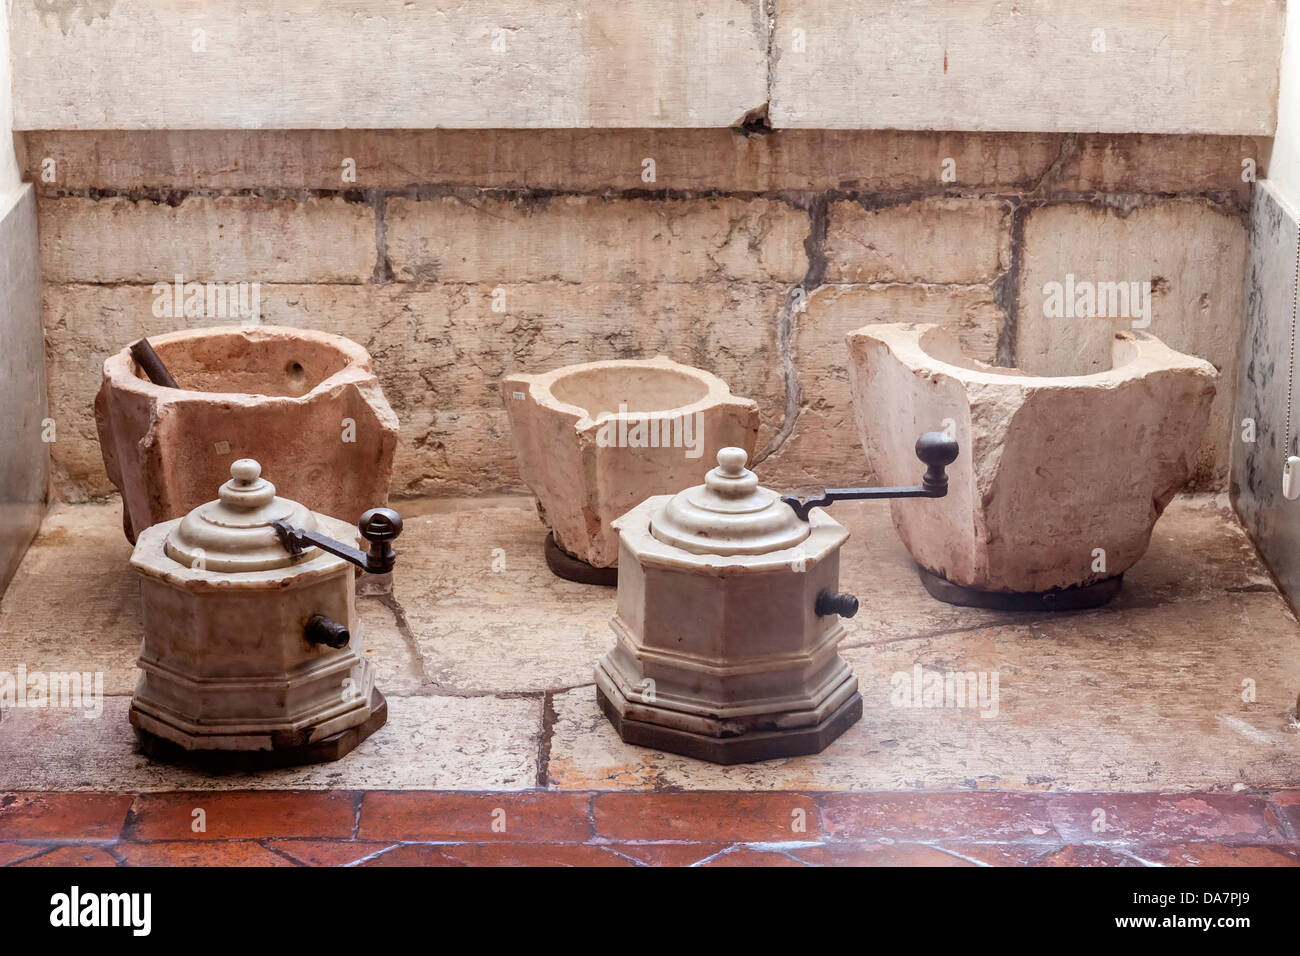 Mortero de cocina de piedra tallada a mano española del siglo XVIII